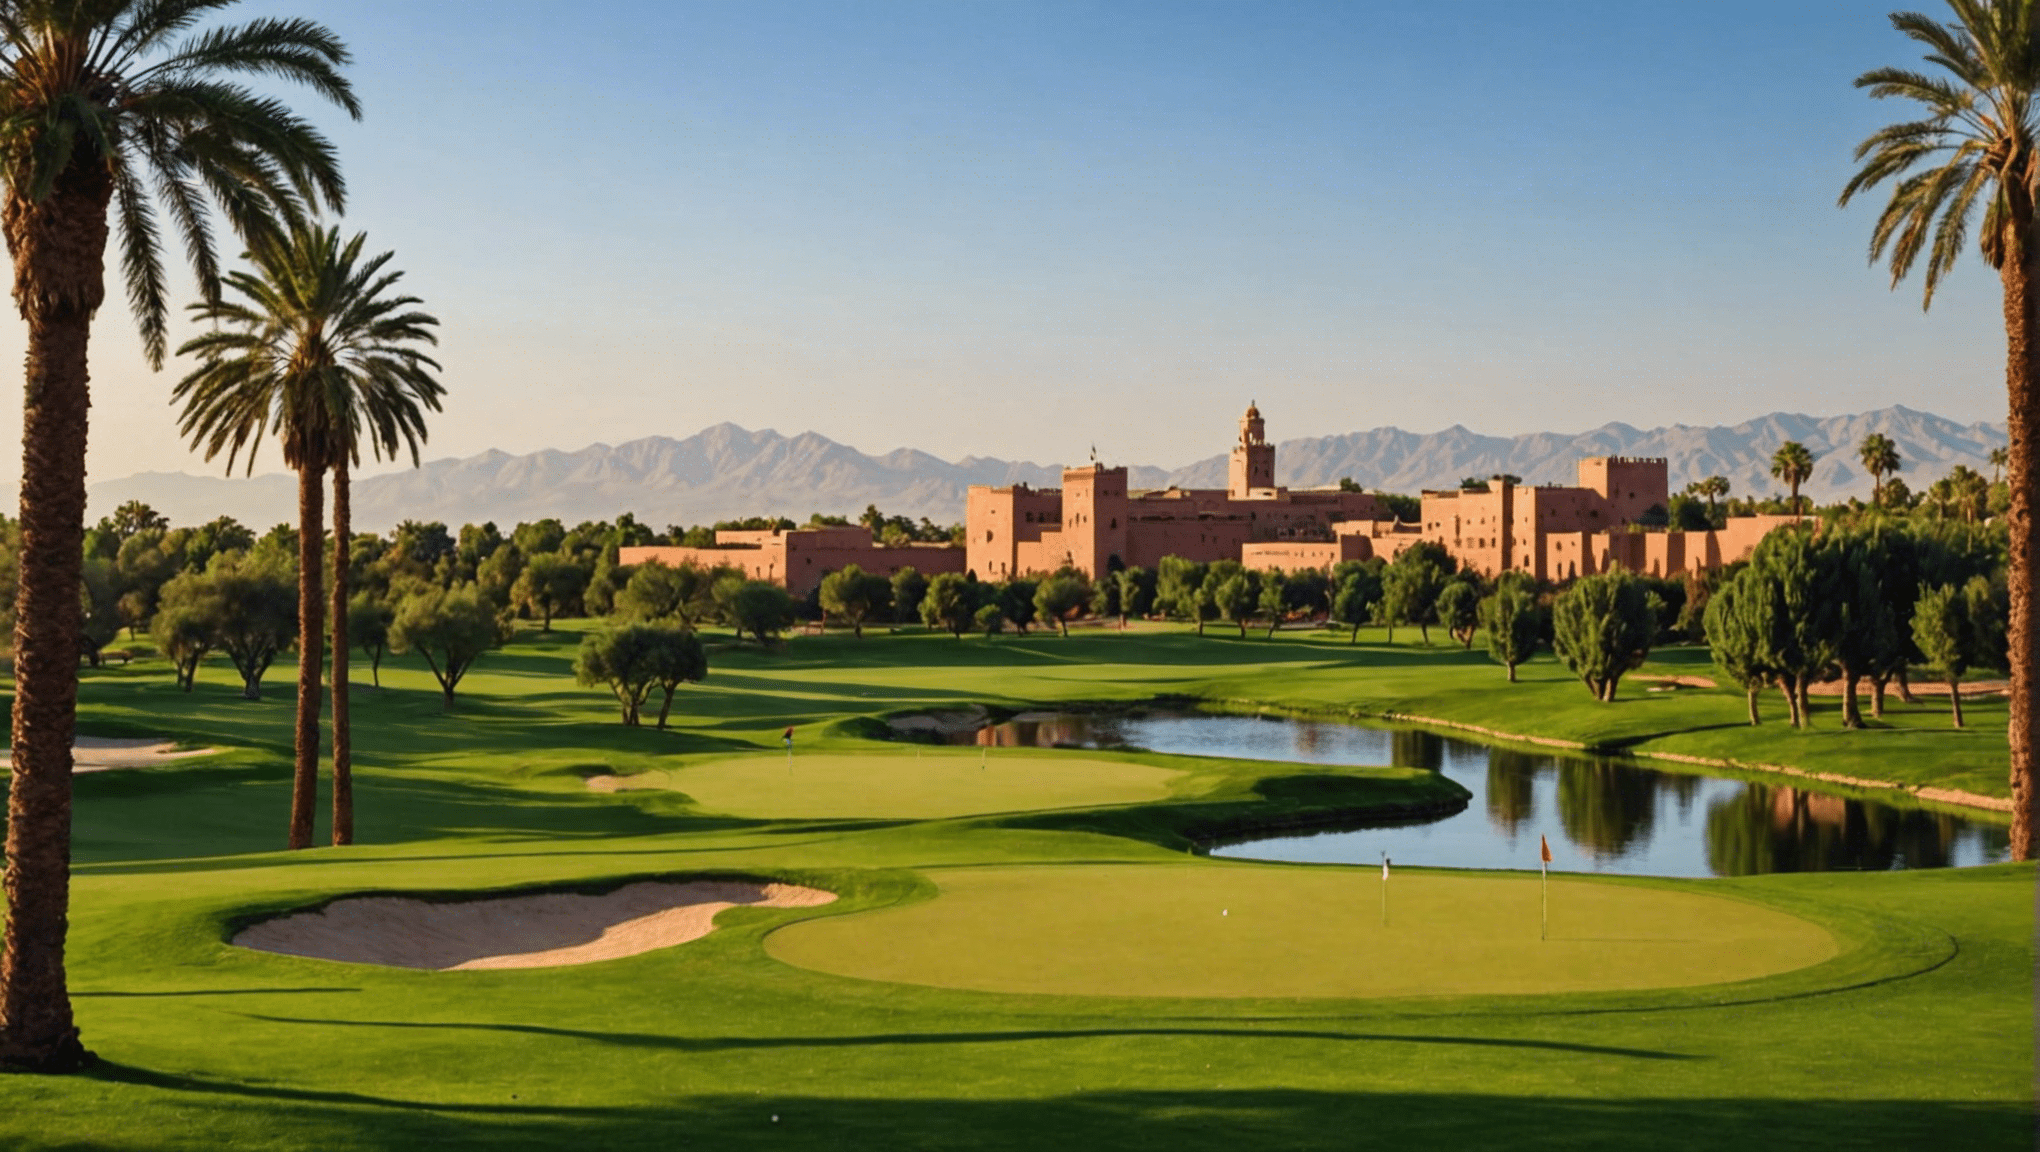 Entdecken Sie die zahlreichen luxuriösen Golfplätze in Marrakesch, einem Paradies für Golfer. Entdecken Sie die atemberaubenden Golfmöglichkeiten in dieser luxuriösen Stadt.